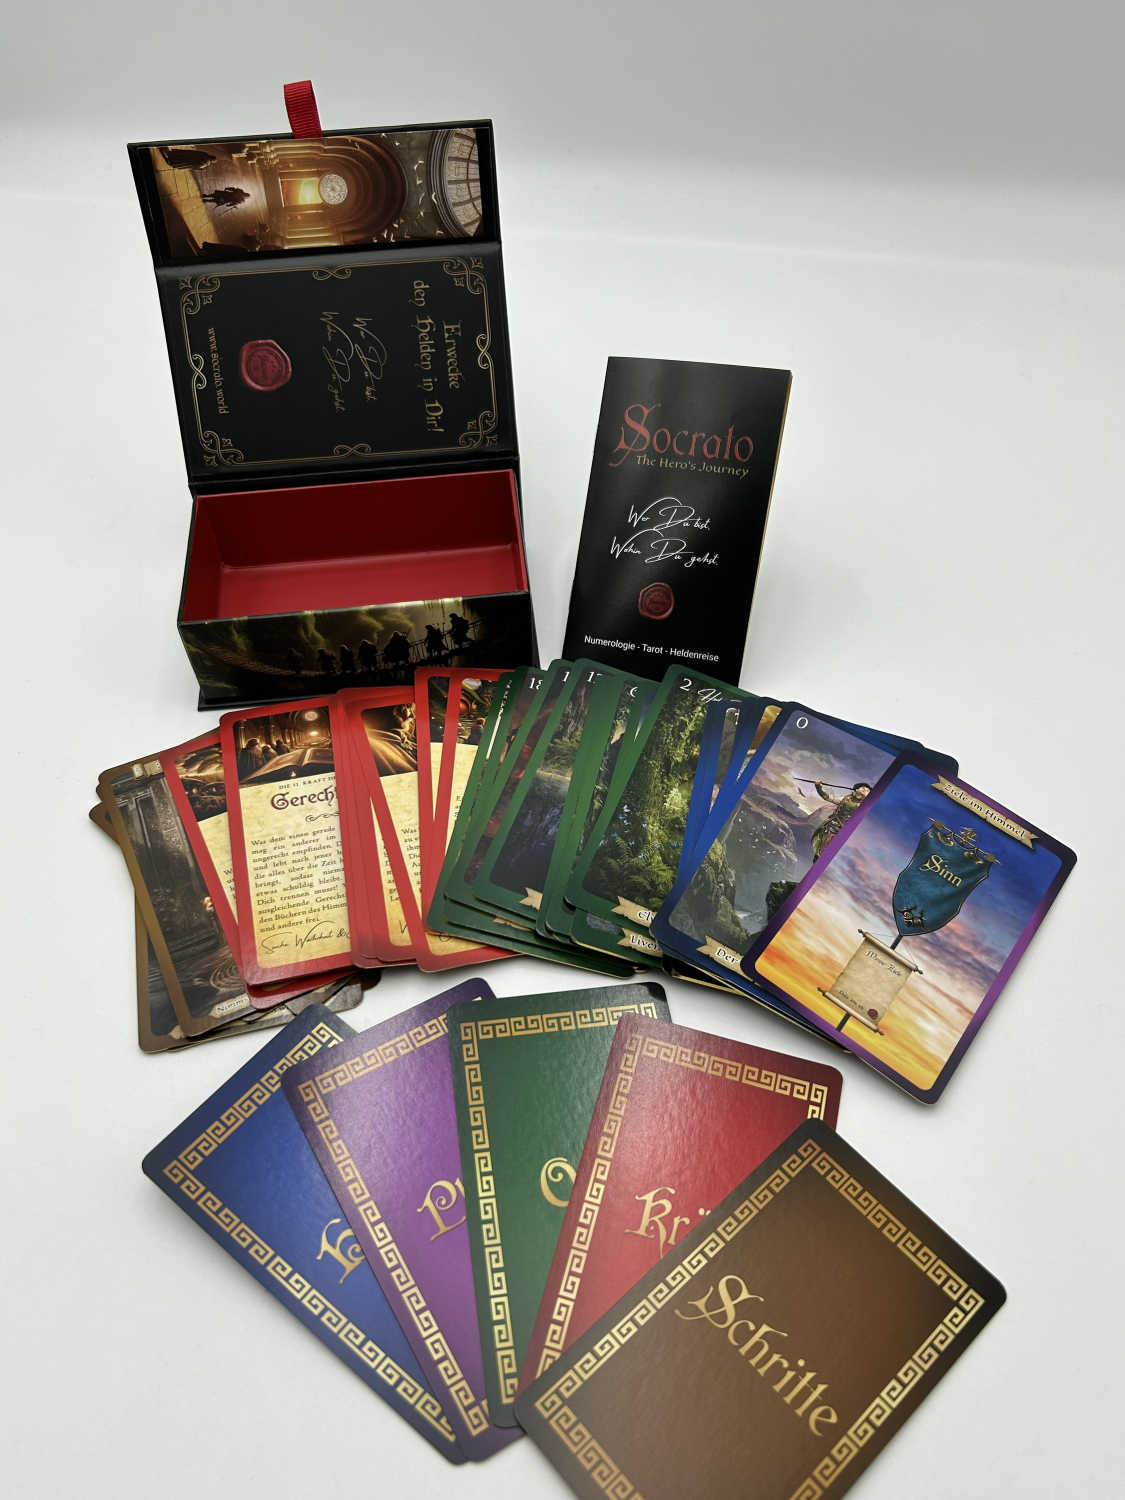 Socrato - Das Heldenreise-Tarot: 72 Karten mit Anleitungsheft